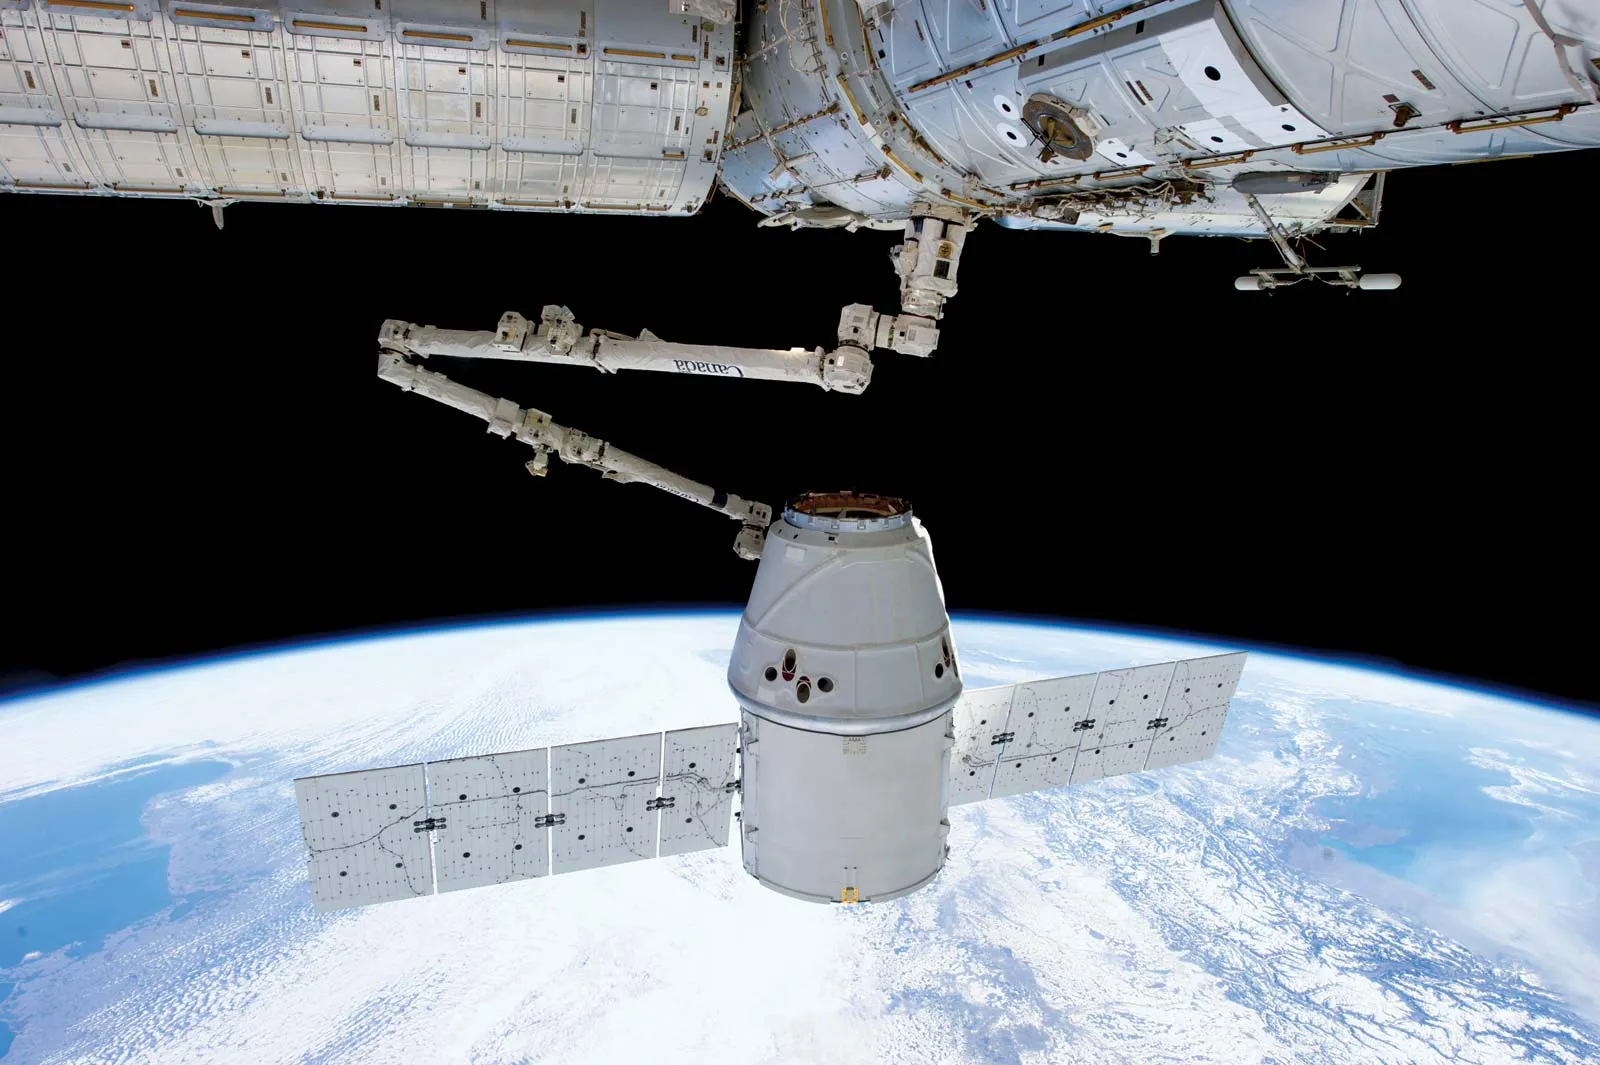 SpaceX ha lanciato il razzo Falcon-9 con la navicella Dragon, che ha consegnato semi di pomodoro alla Stazione Spaziale Internazionale